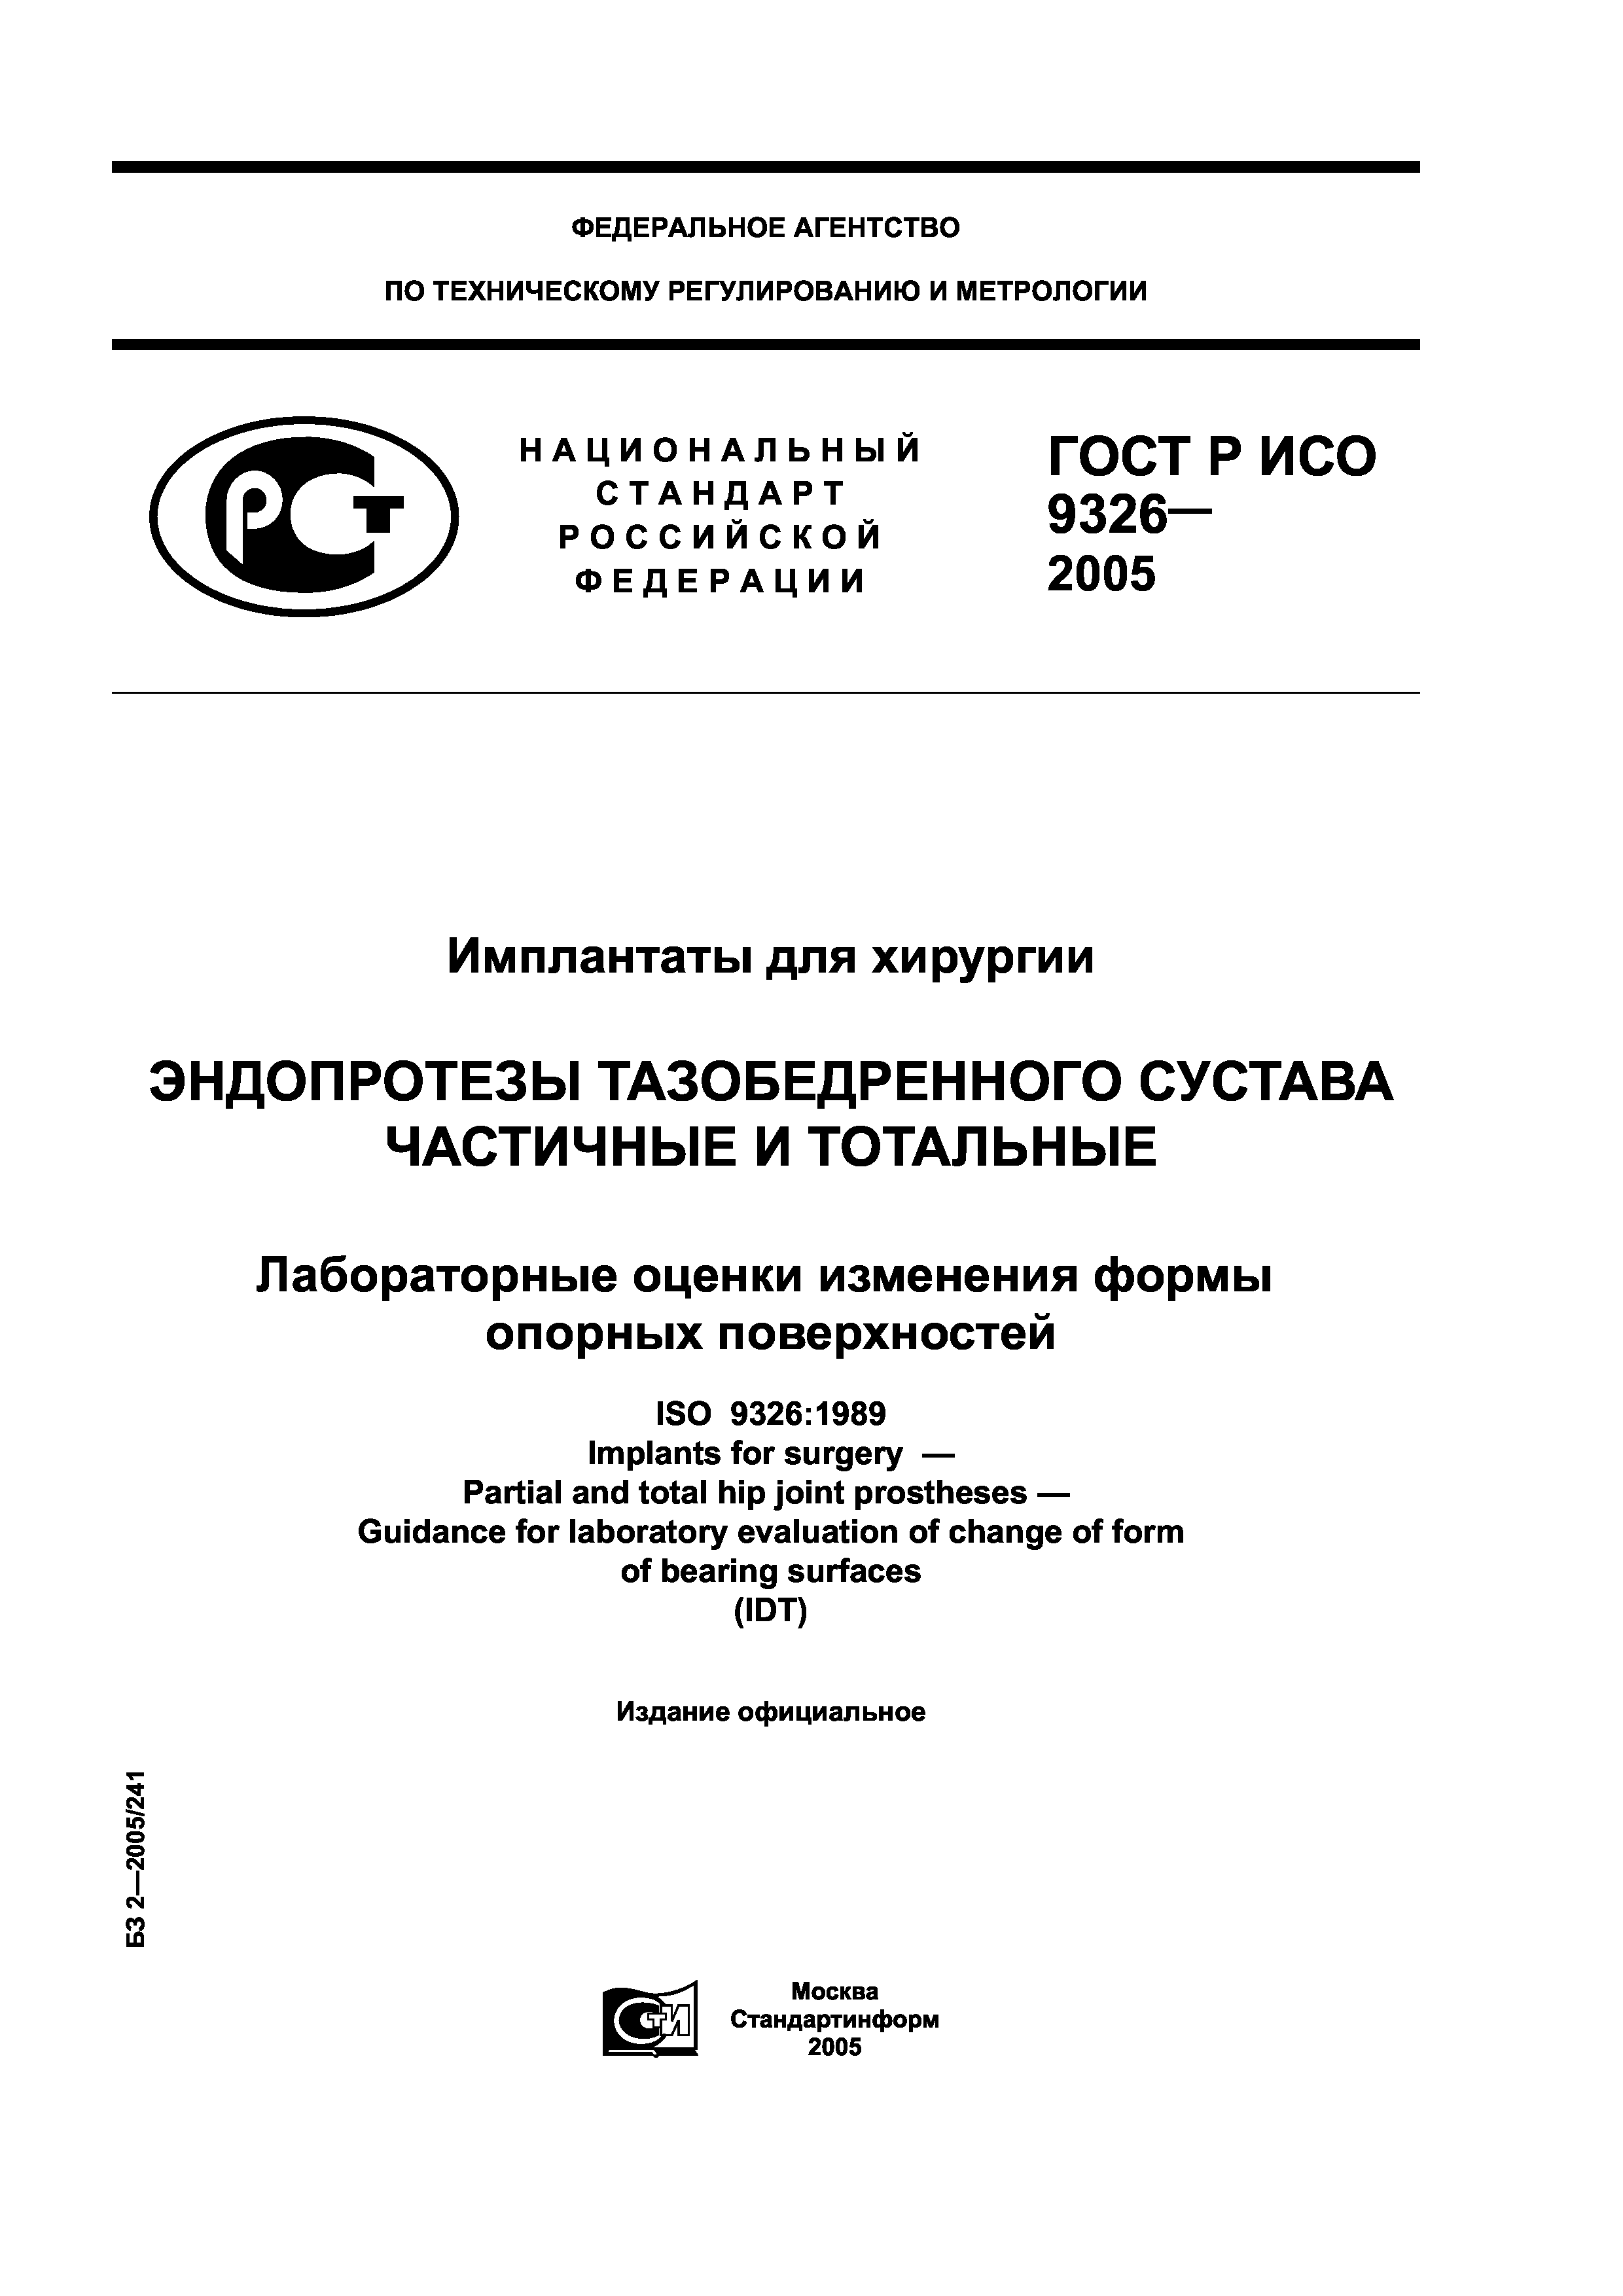 ГОСТ Р ИСО 9326-2005